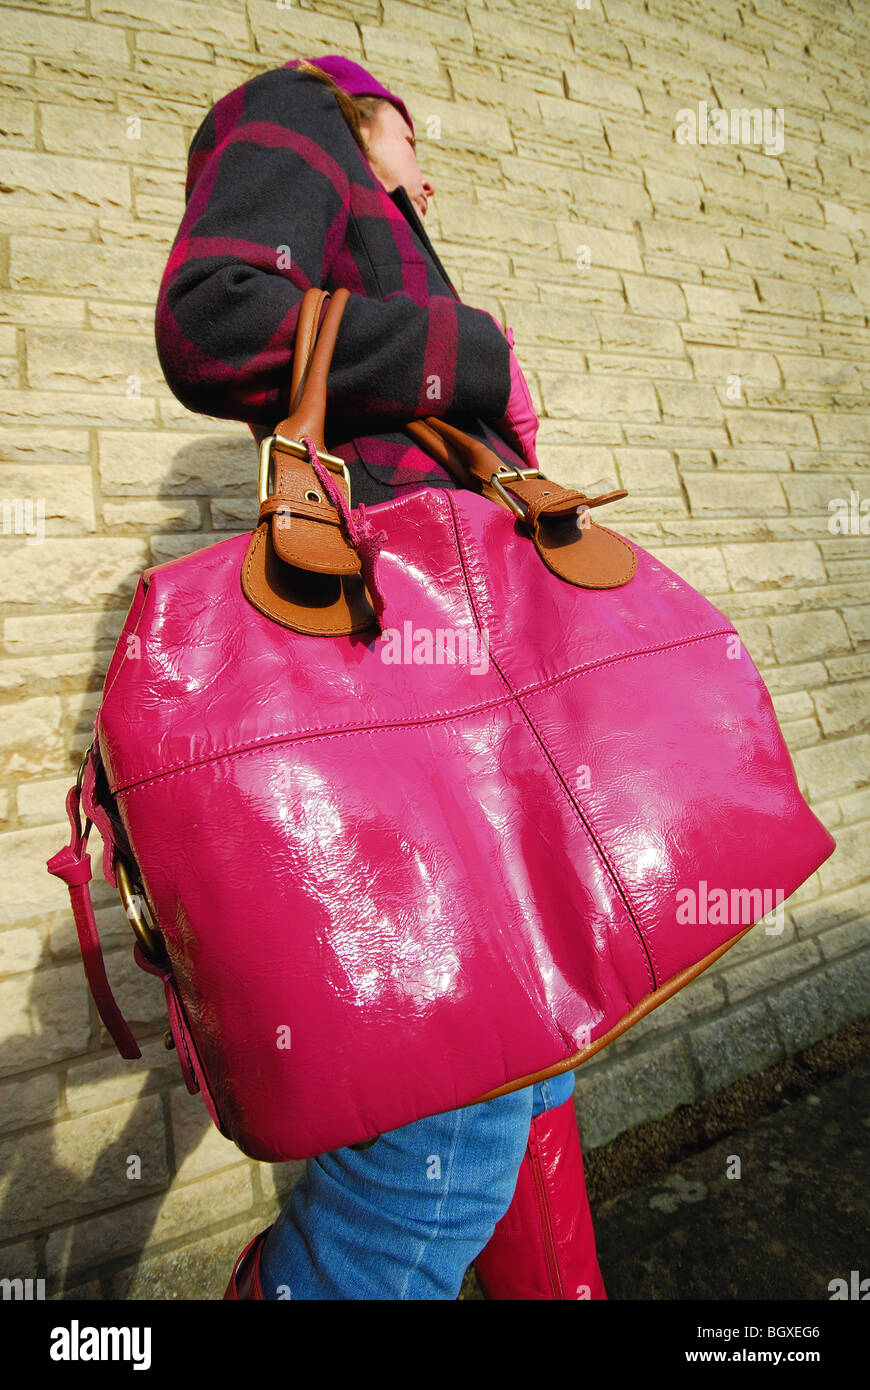 Une femme portant un brillant, rose, immense sac à main. Banque D'Images